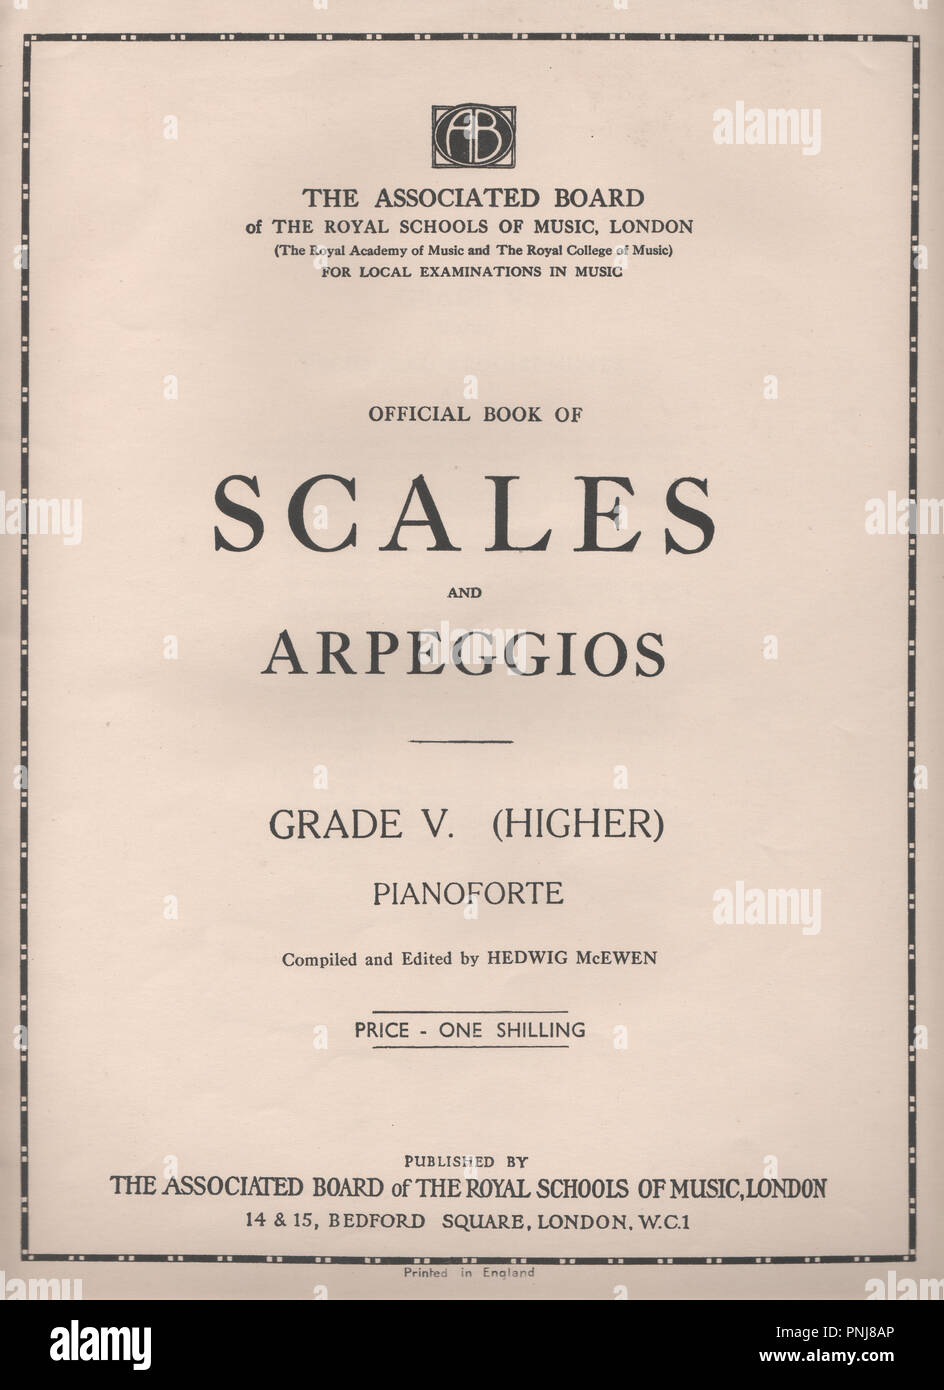 Il Libro Ufficiale di scale e arpeggi per pianoforte pubblicato negli anni  Trenta dal relativo bordo del Royal nelle scuole di musica per gli esami  locali in musica. Compilato da Edvige McEwen